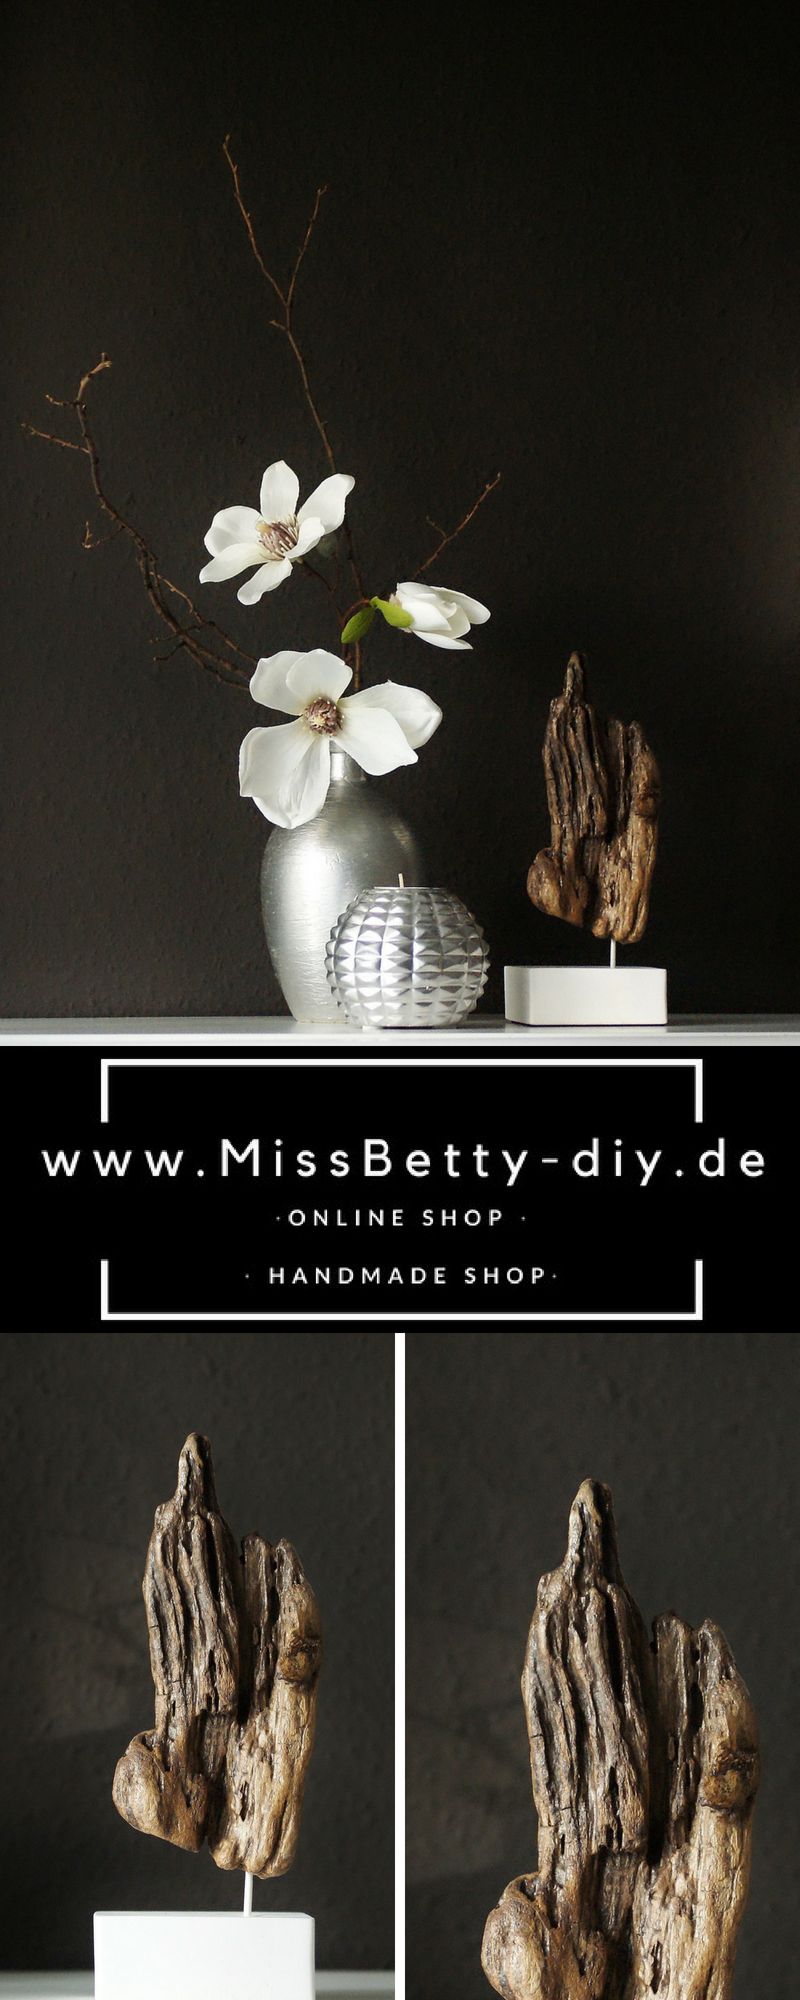 Dekoladen Online Schön Shop the Look Deko Treibholz Skulptur Auf Einem Weißen